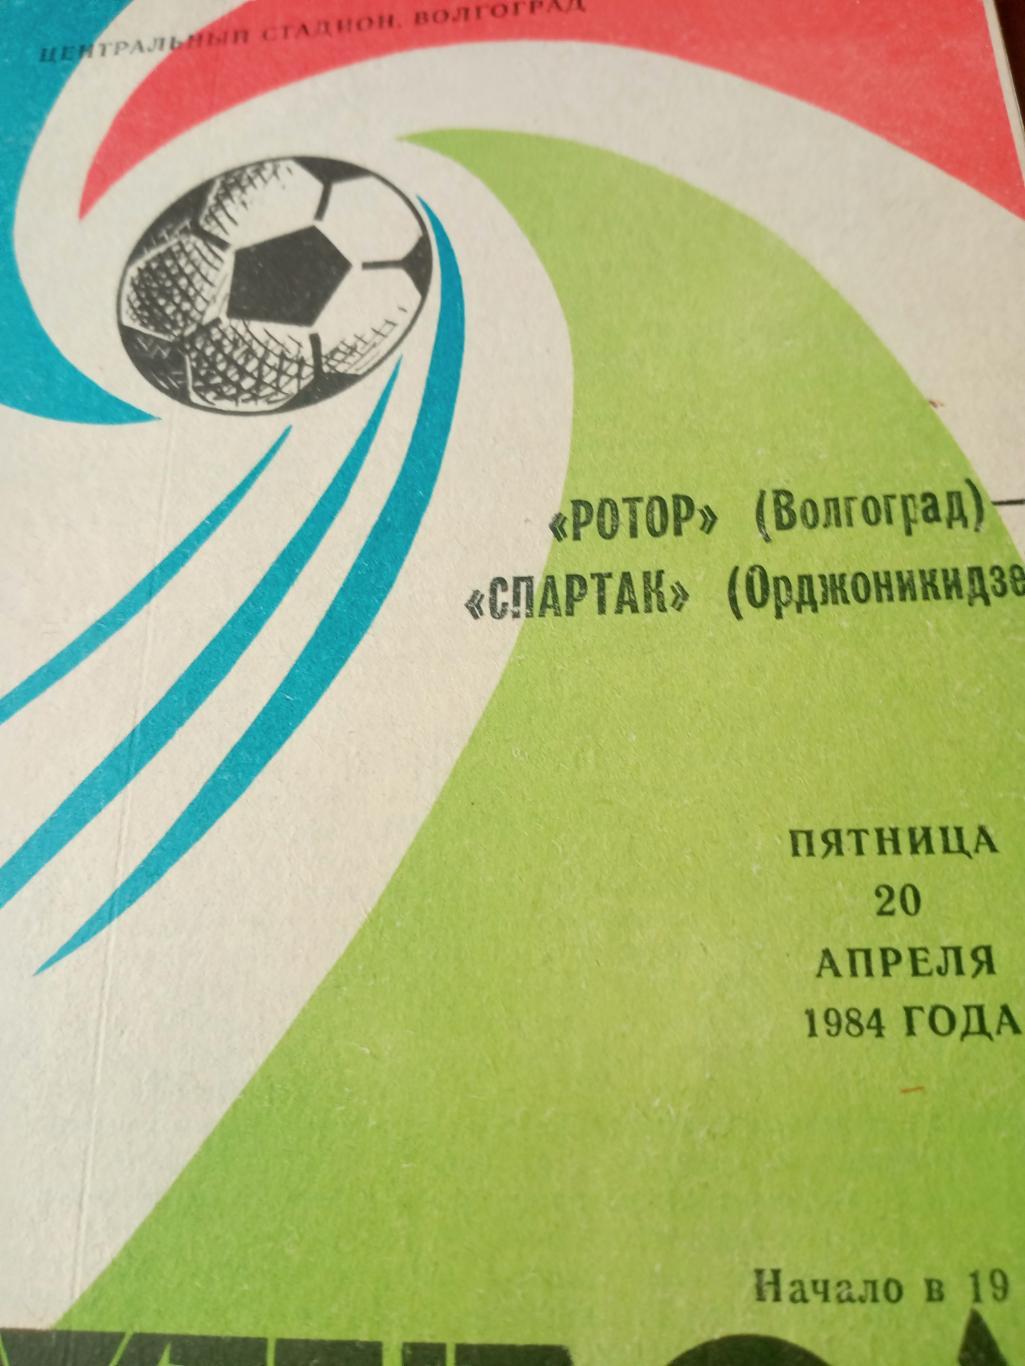 Ротор Волгоград - Спартак Орджоникидзе. 20 апреля 1984 год